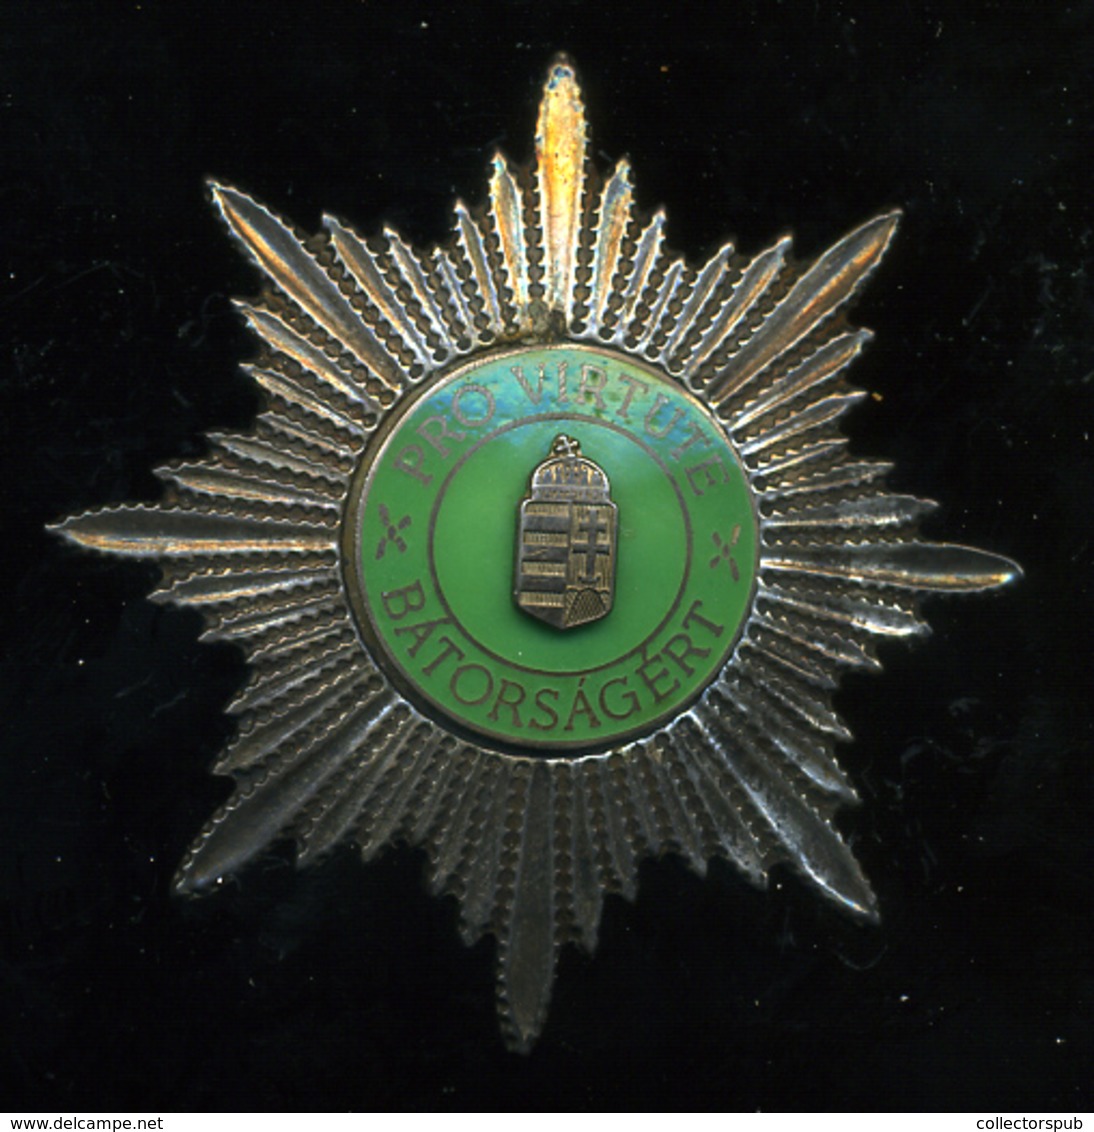 Bátorságért érdemjel (ezüst) - Militari